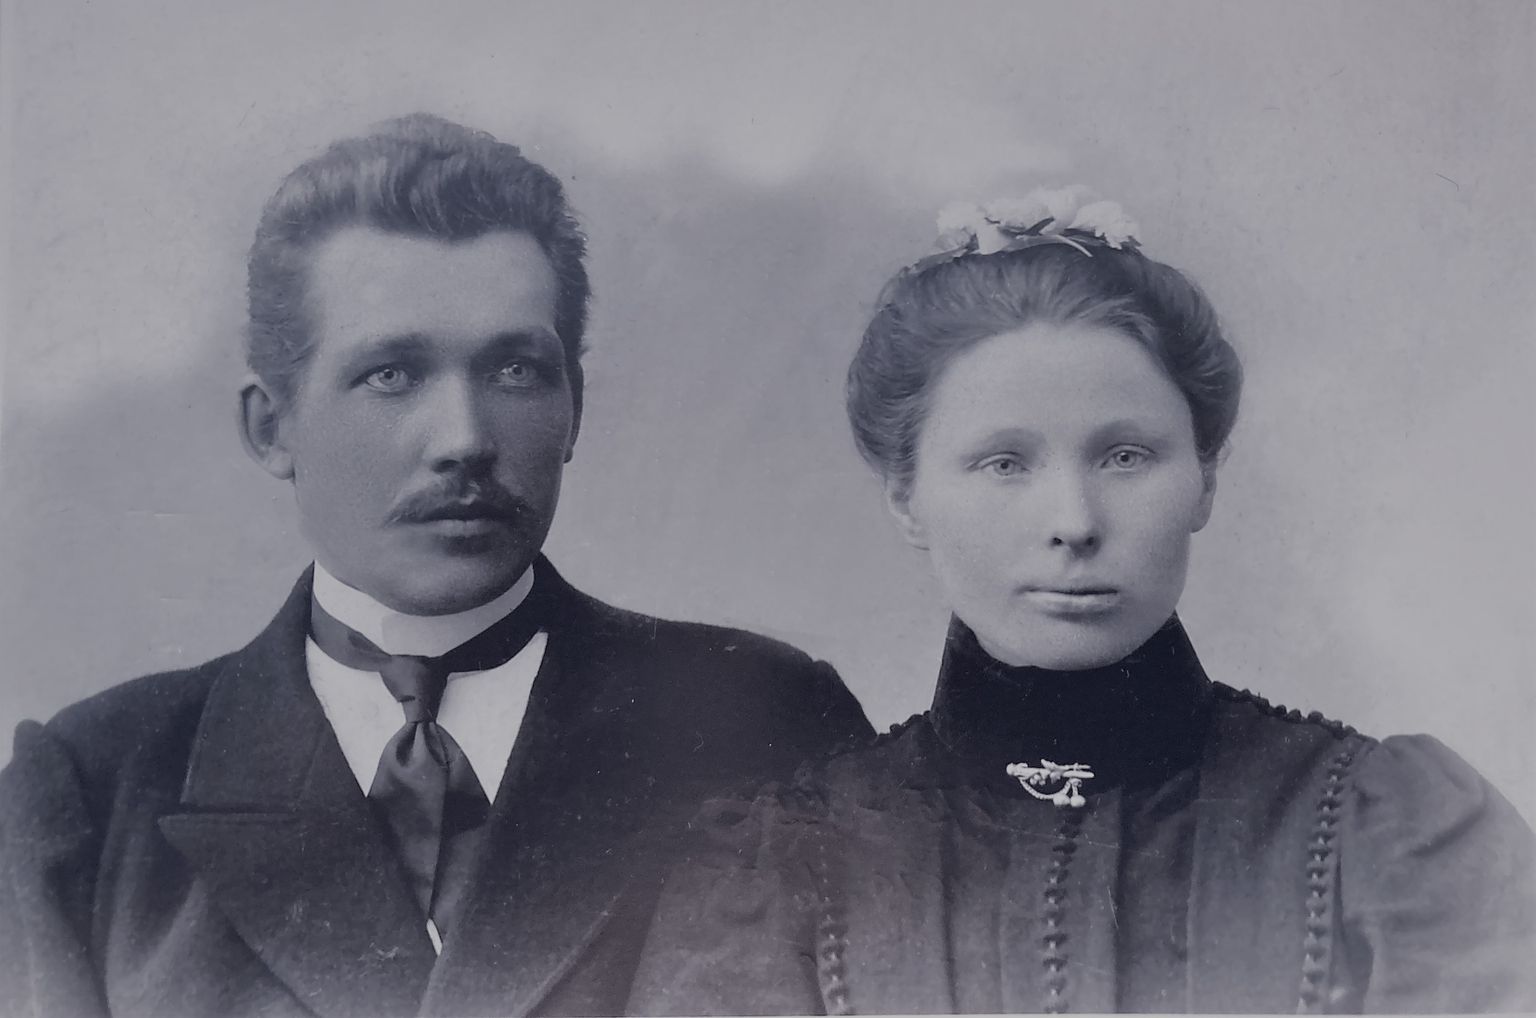 Pulmapildil Miina Lass ja Jaan Krusbart 1902. või 1903. aastal Viru-Nigulas.